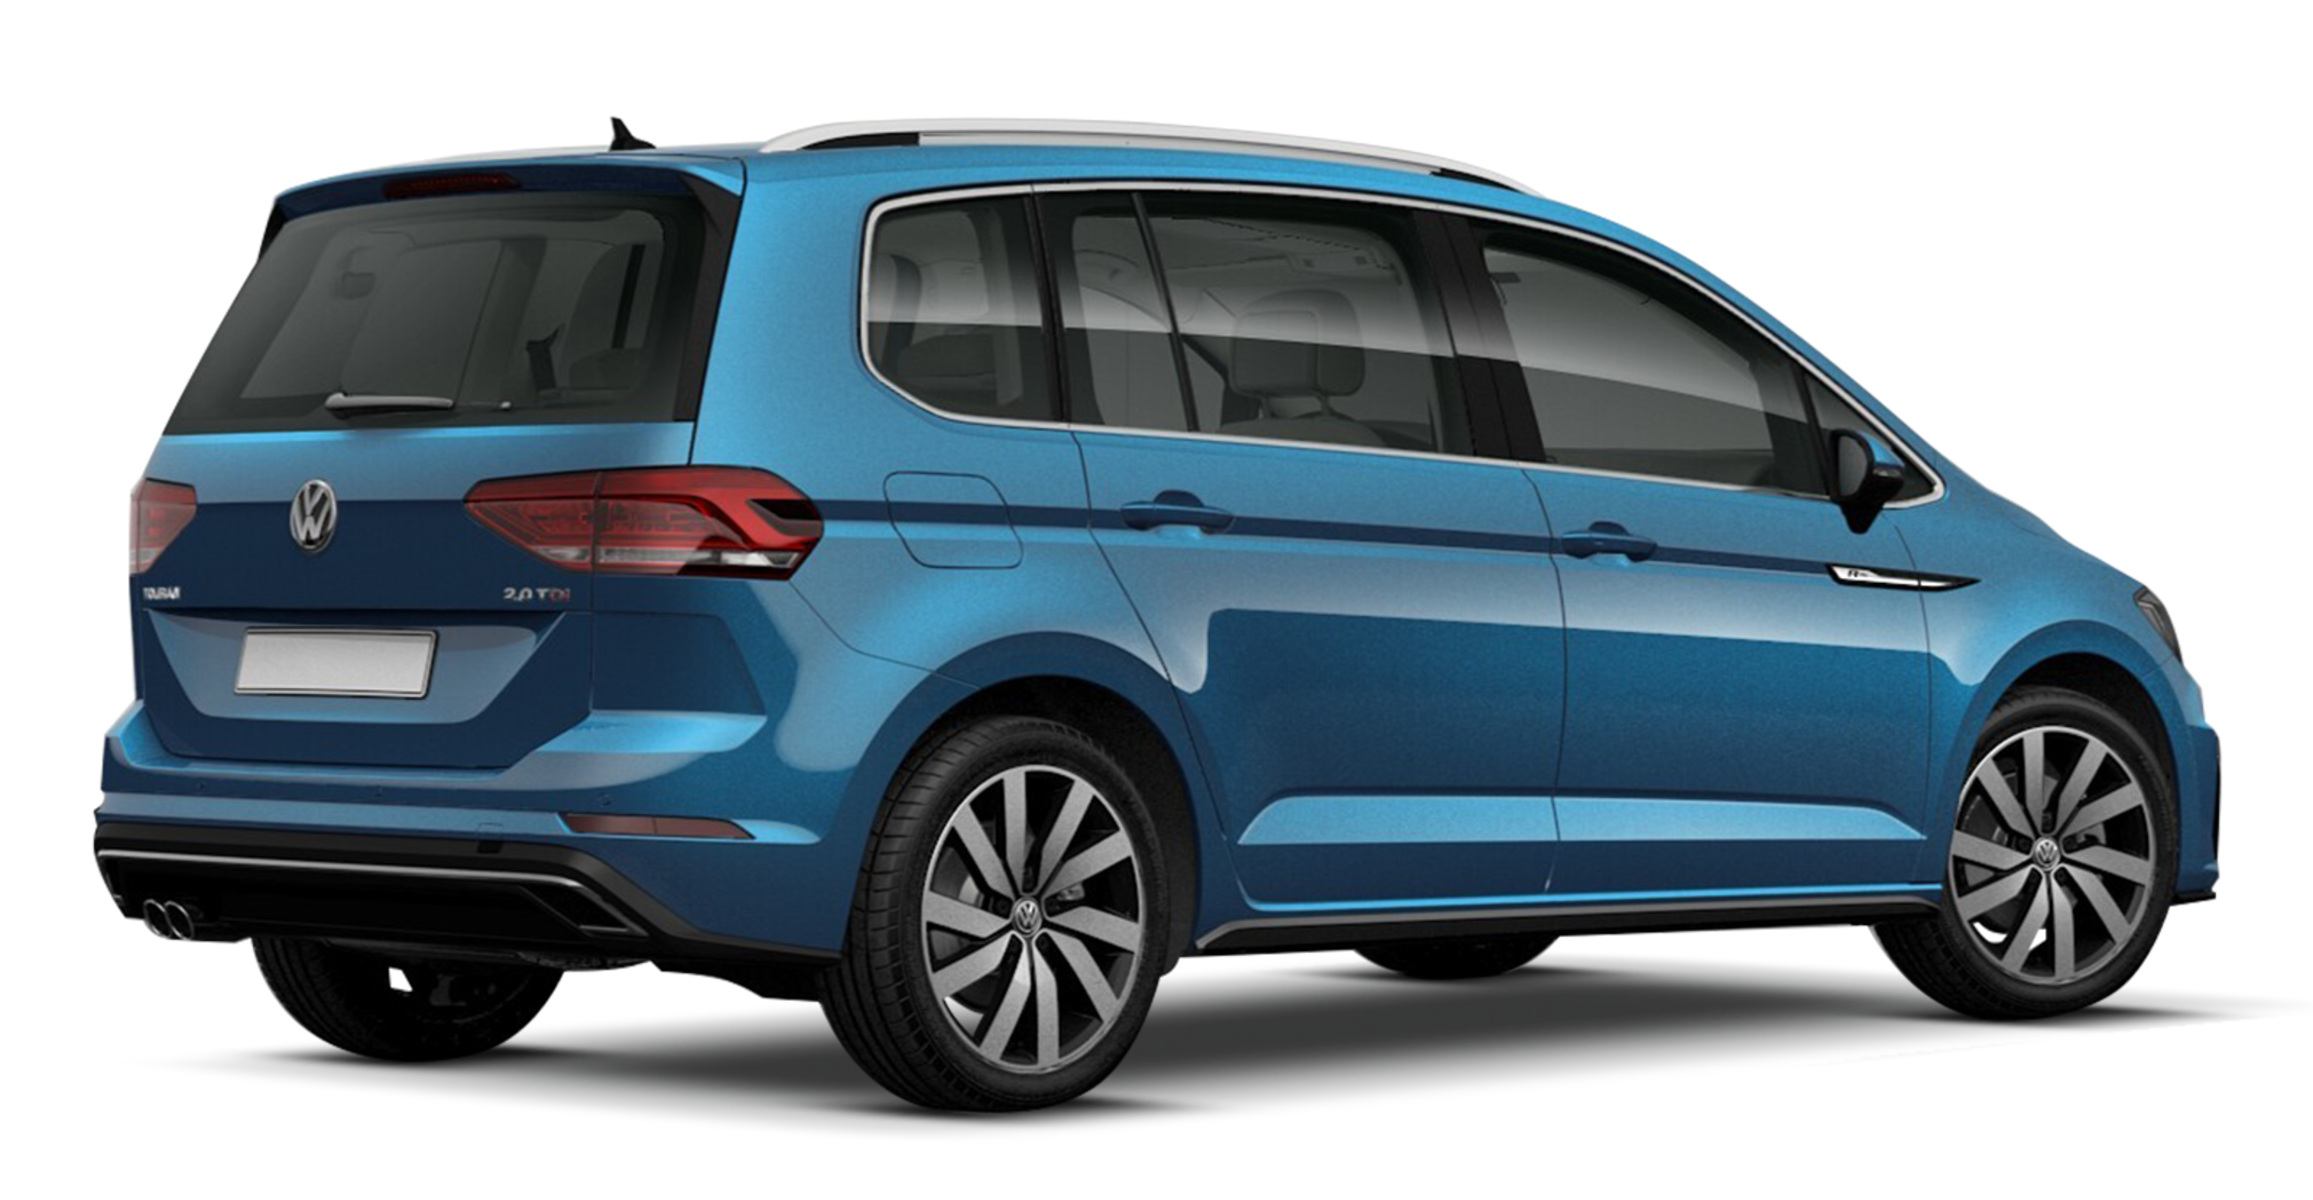 Listino Volkswagen Touran prezzo scheda tecnica